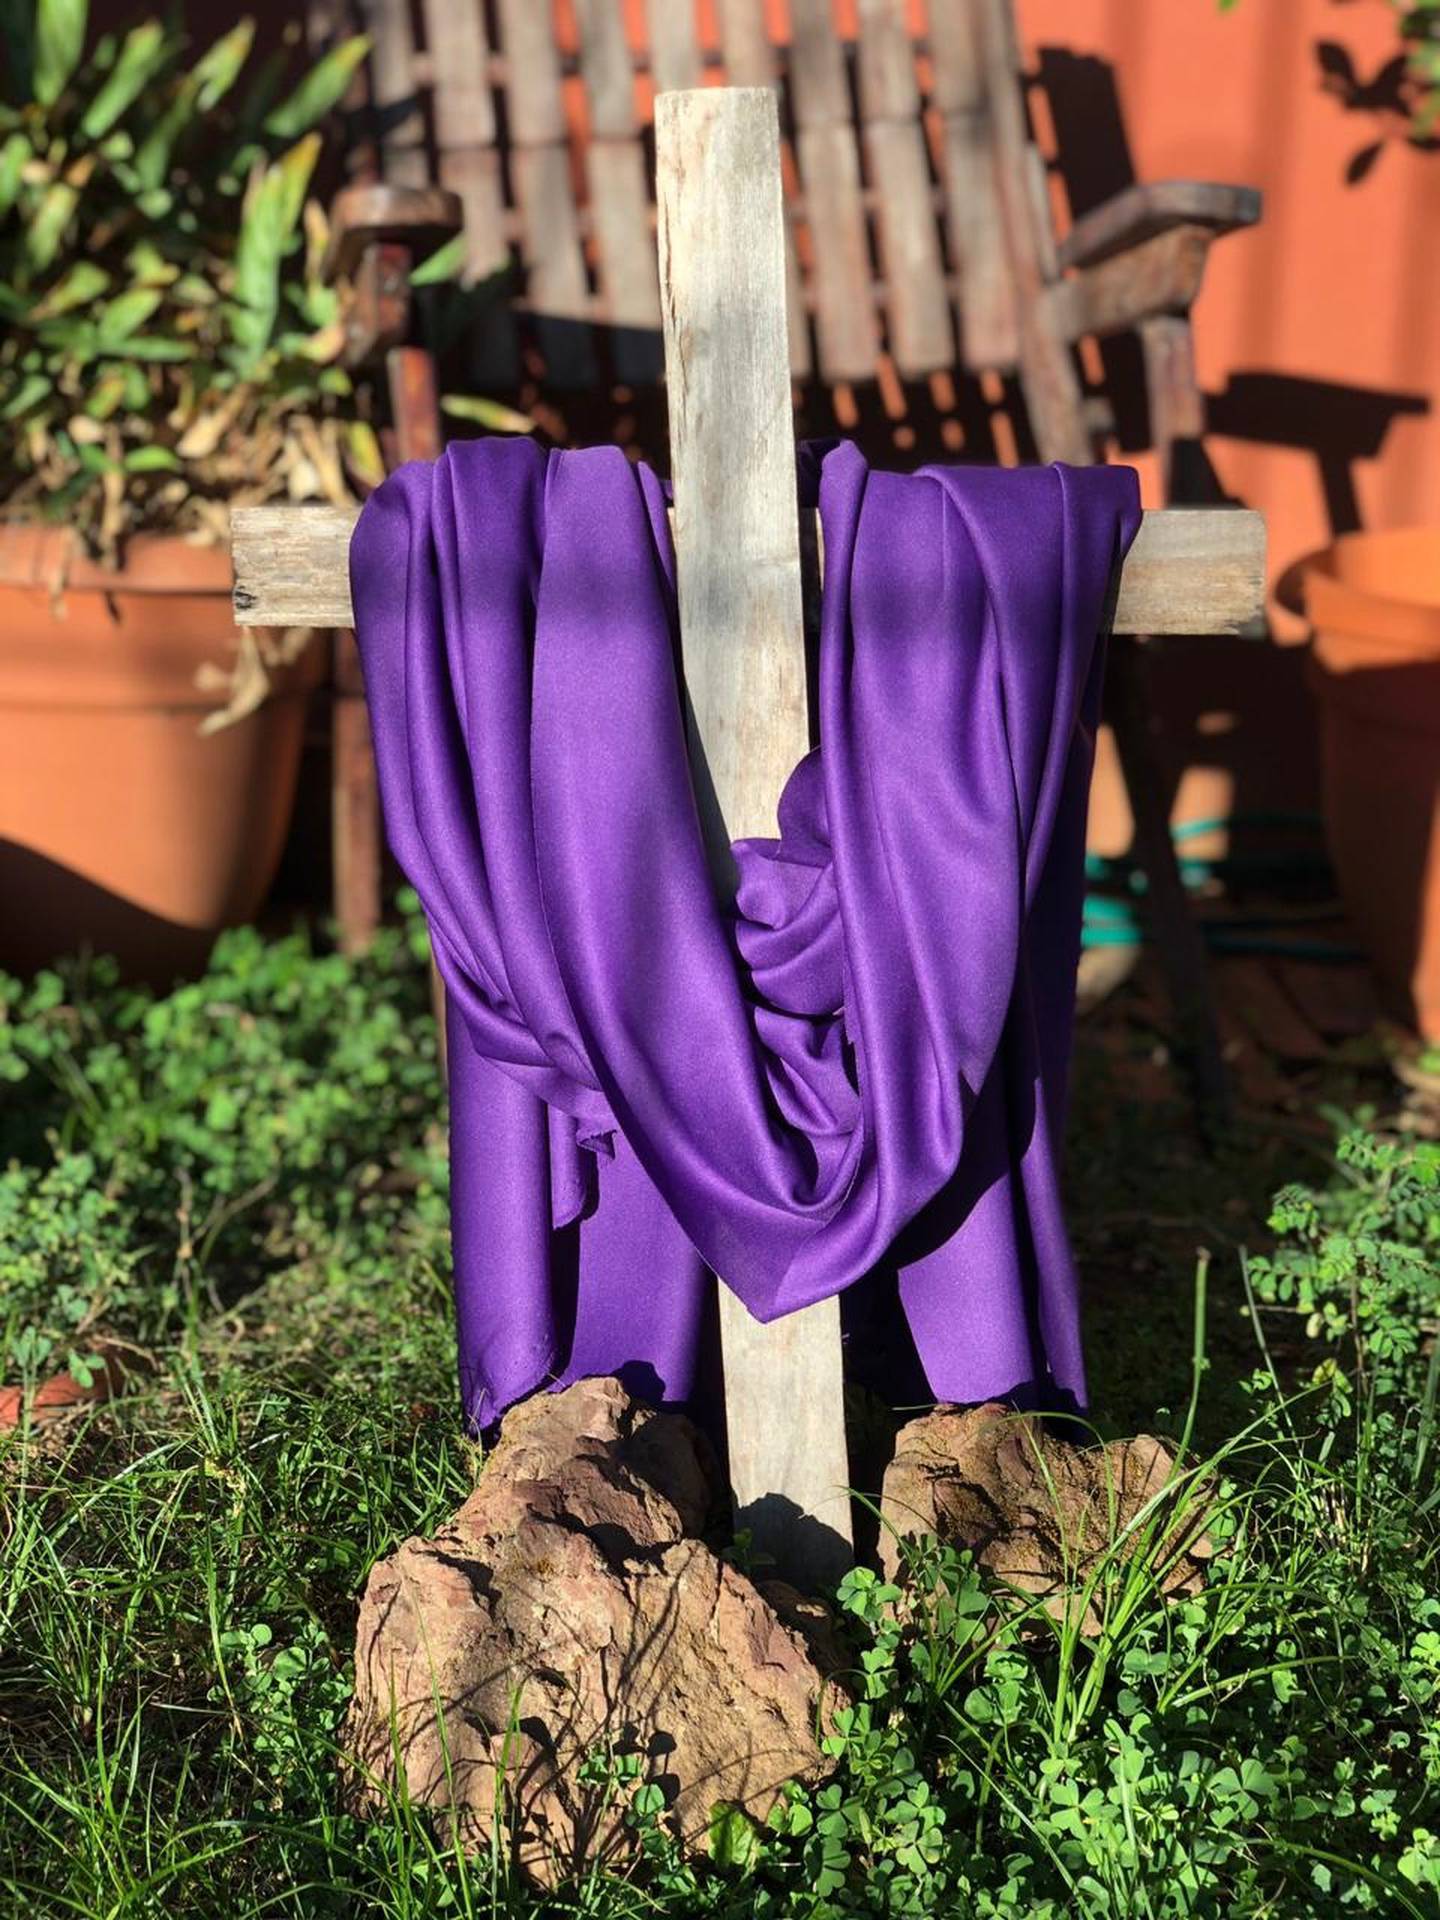 La tradicional cruz es uno de los signos presentes en el hogar de la familia Cambronero Rodríguez. Cortesía.